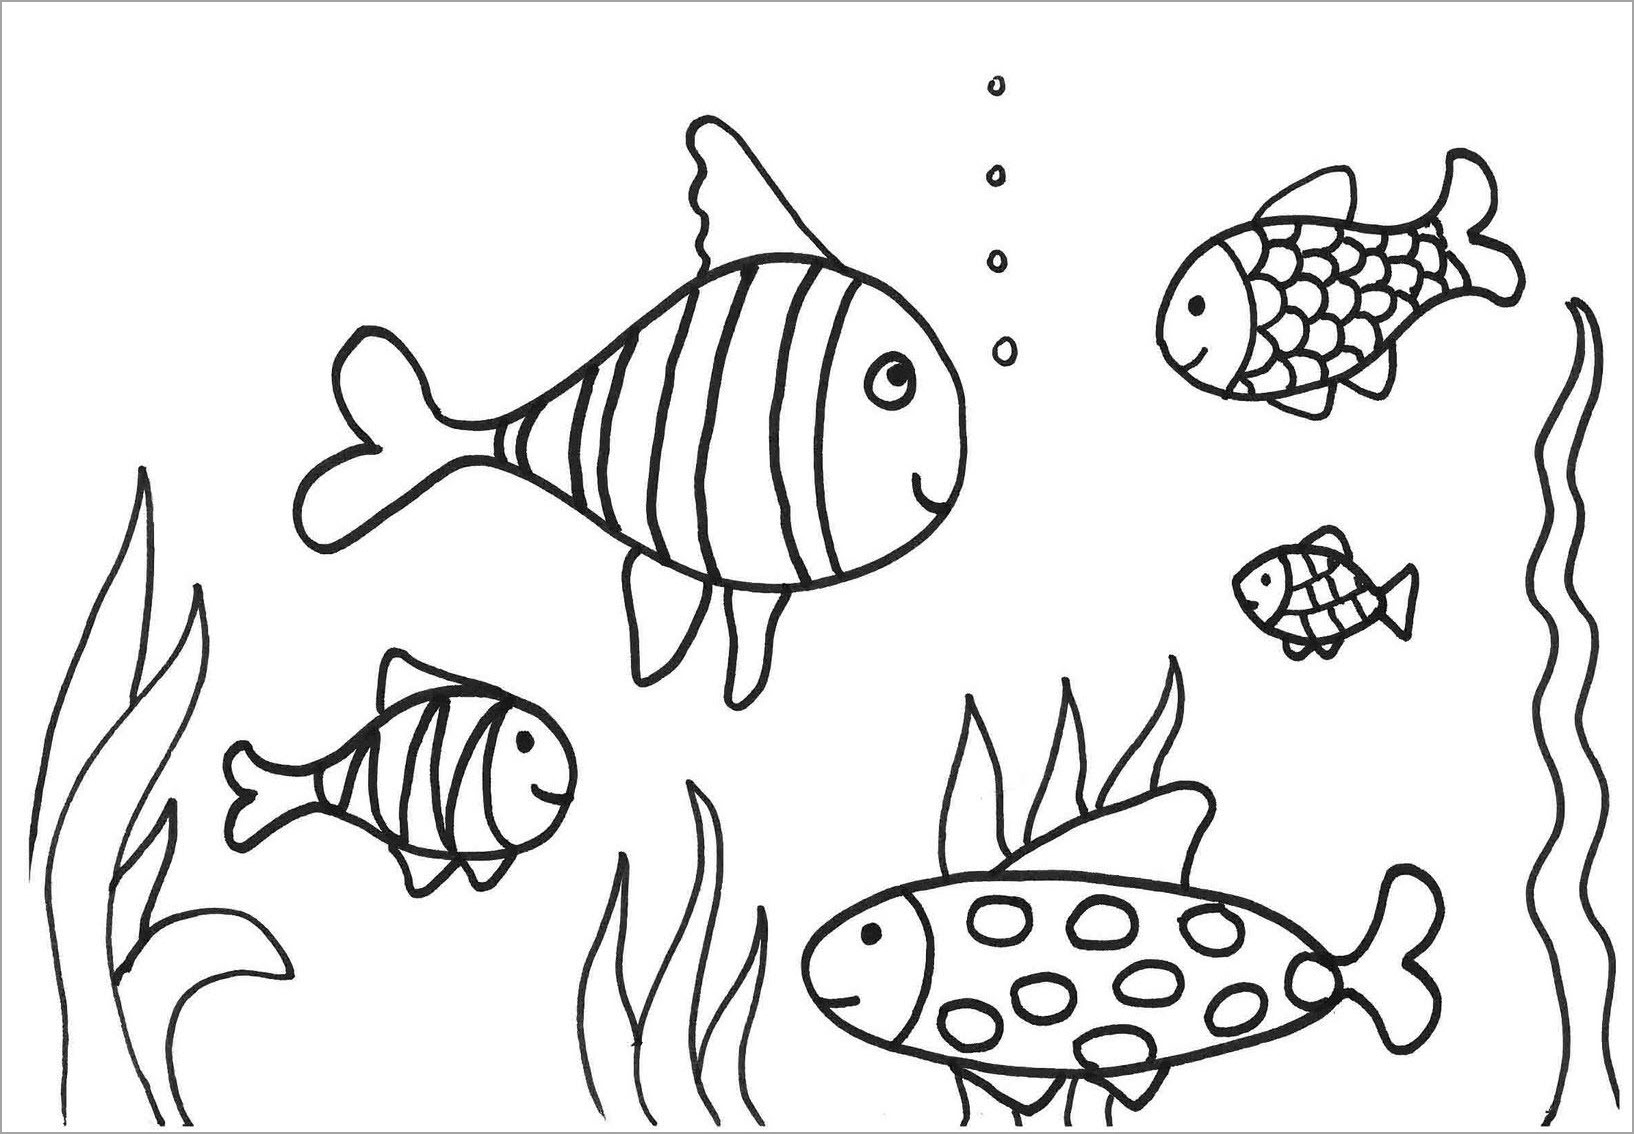 Tranh tô màu cá: Hãy thử vẽ và tô màu những con cá đa dạng nhất trong đại dương để tạo ra một tác phẩm nghệ thuật đẹp mắt! Tranh tô màu cá là một hoạt động thú vị và thư giãn, giúp giải tỏa căng thẳng và tạo ra tác phẩm nghệ thuật độc đáo của riêng bạn. Hãy bắt đầu ngay bây giờ và bắt tay vào cuộc sáng tạo với chúng tôi!